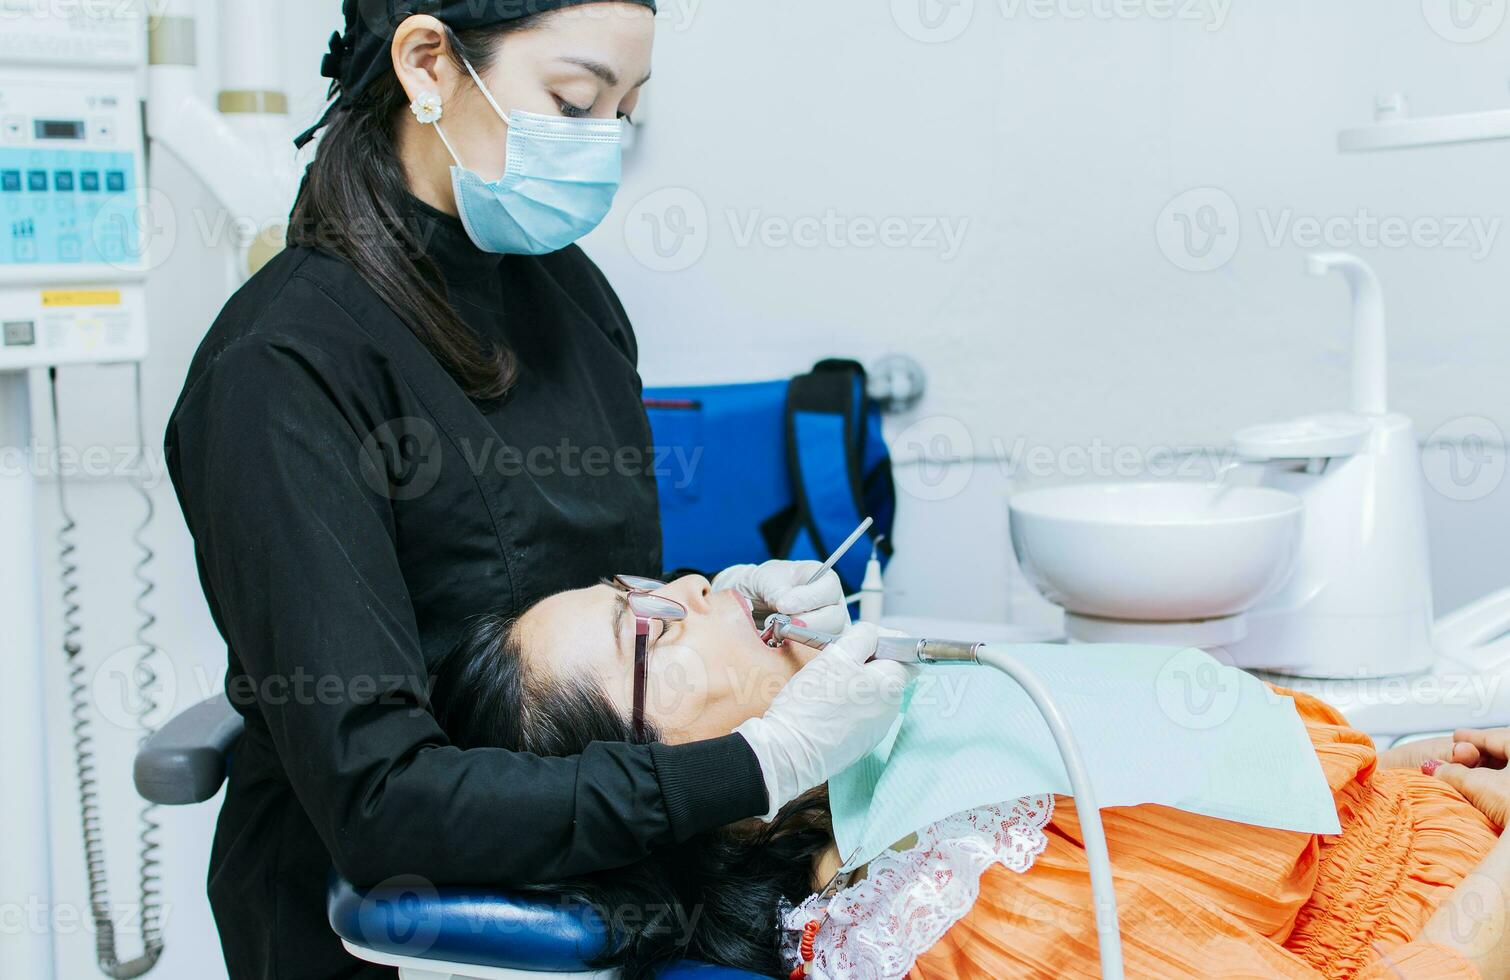 el estomatólogo limpieza un del paciente dientes, un dentista limpieza un del paciente boca, un dentista limpieza un del paciente caries, un dentista limpieza un del paciente boca foto